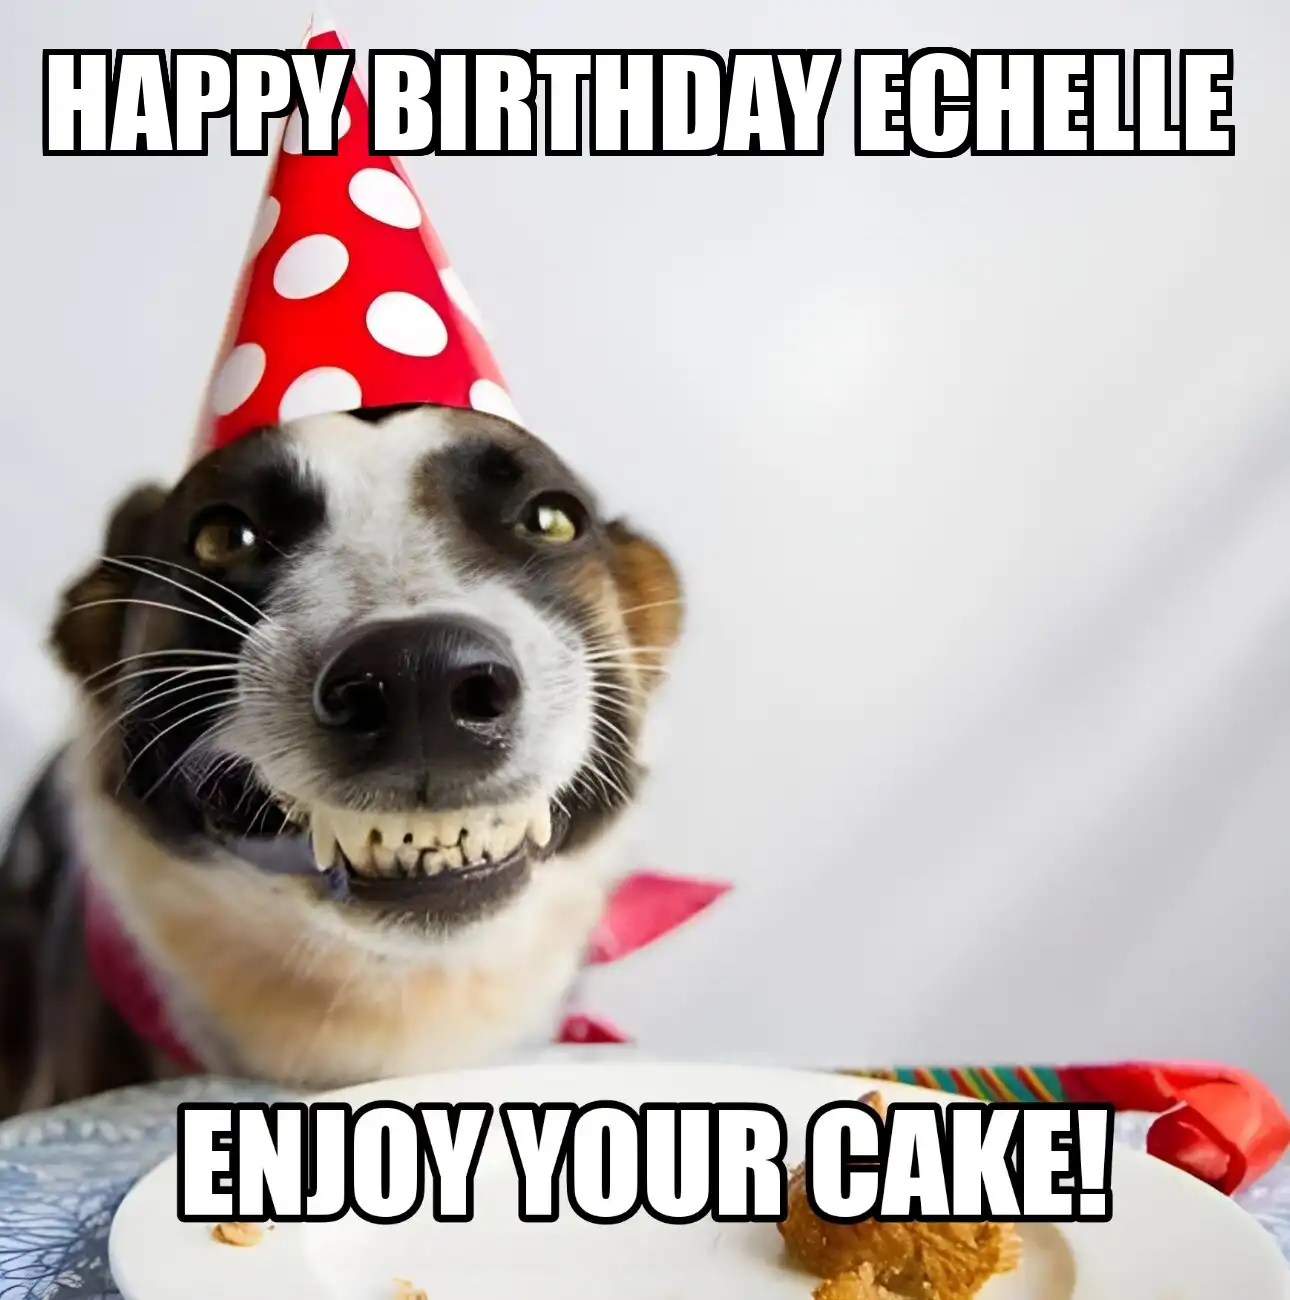 Happy Birthday Echelle Enjoy Your Cake Dog Meme